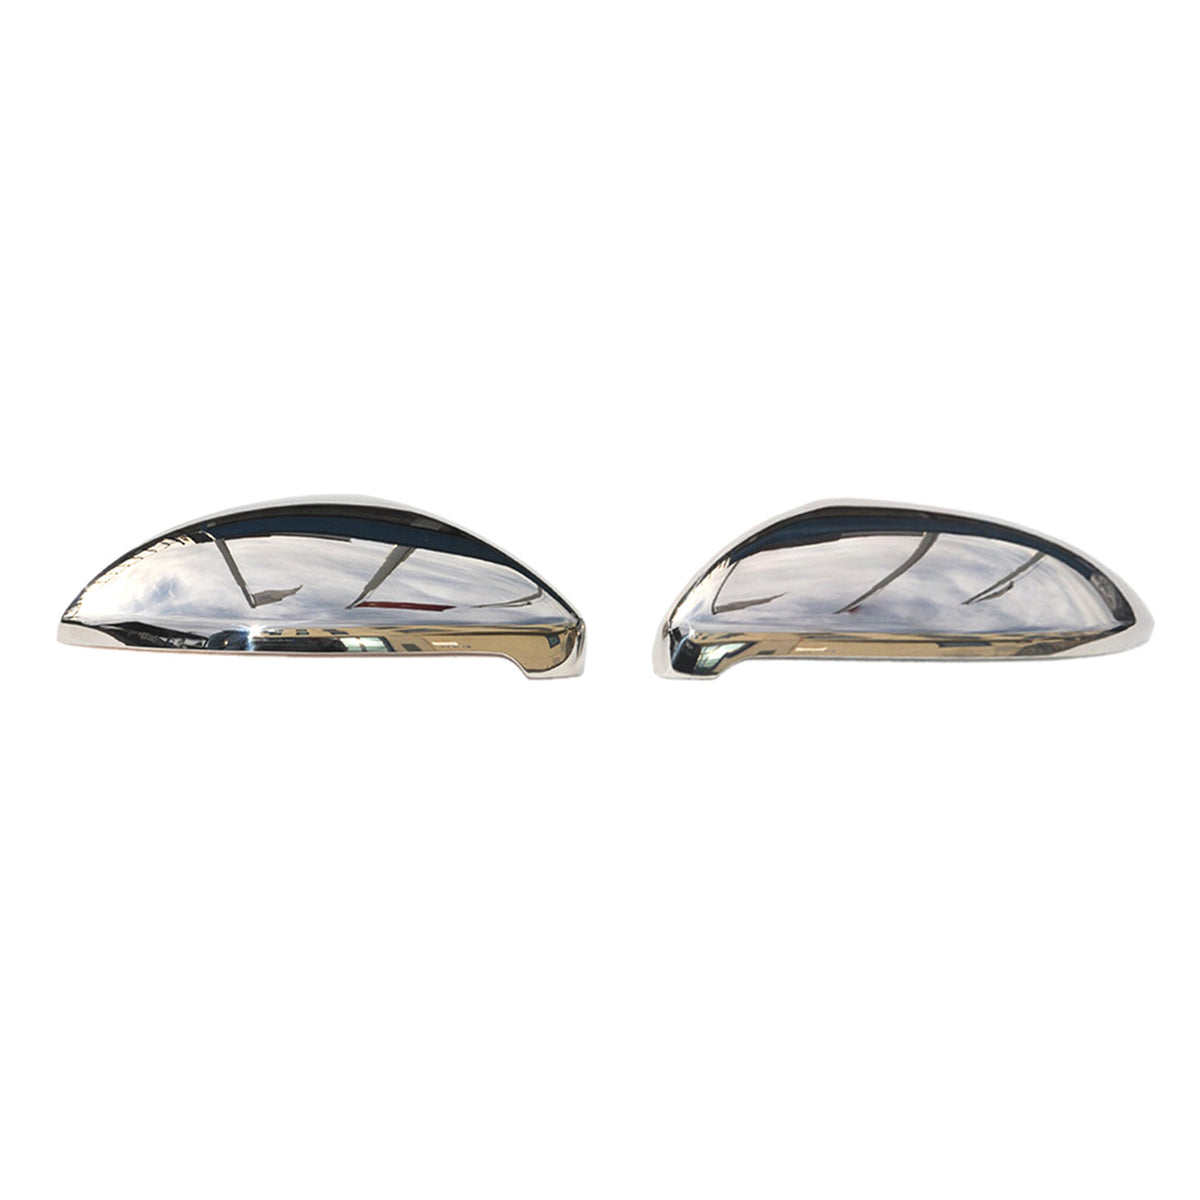 Spiegelkappen Spiegelabdeckung für VW Golf Alltrack 2014-2019 Edelstahl Silber